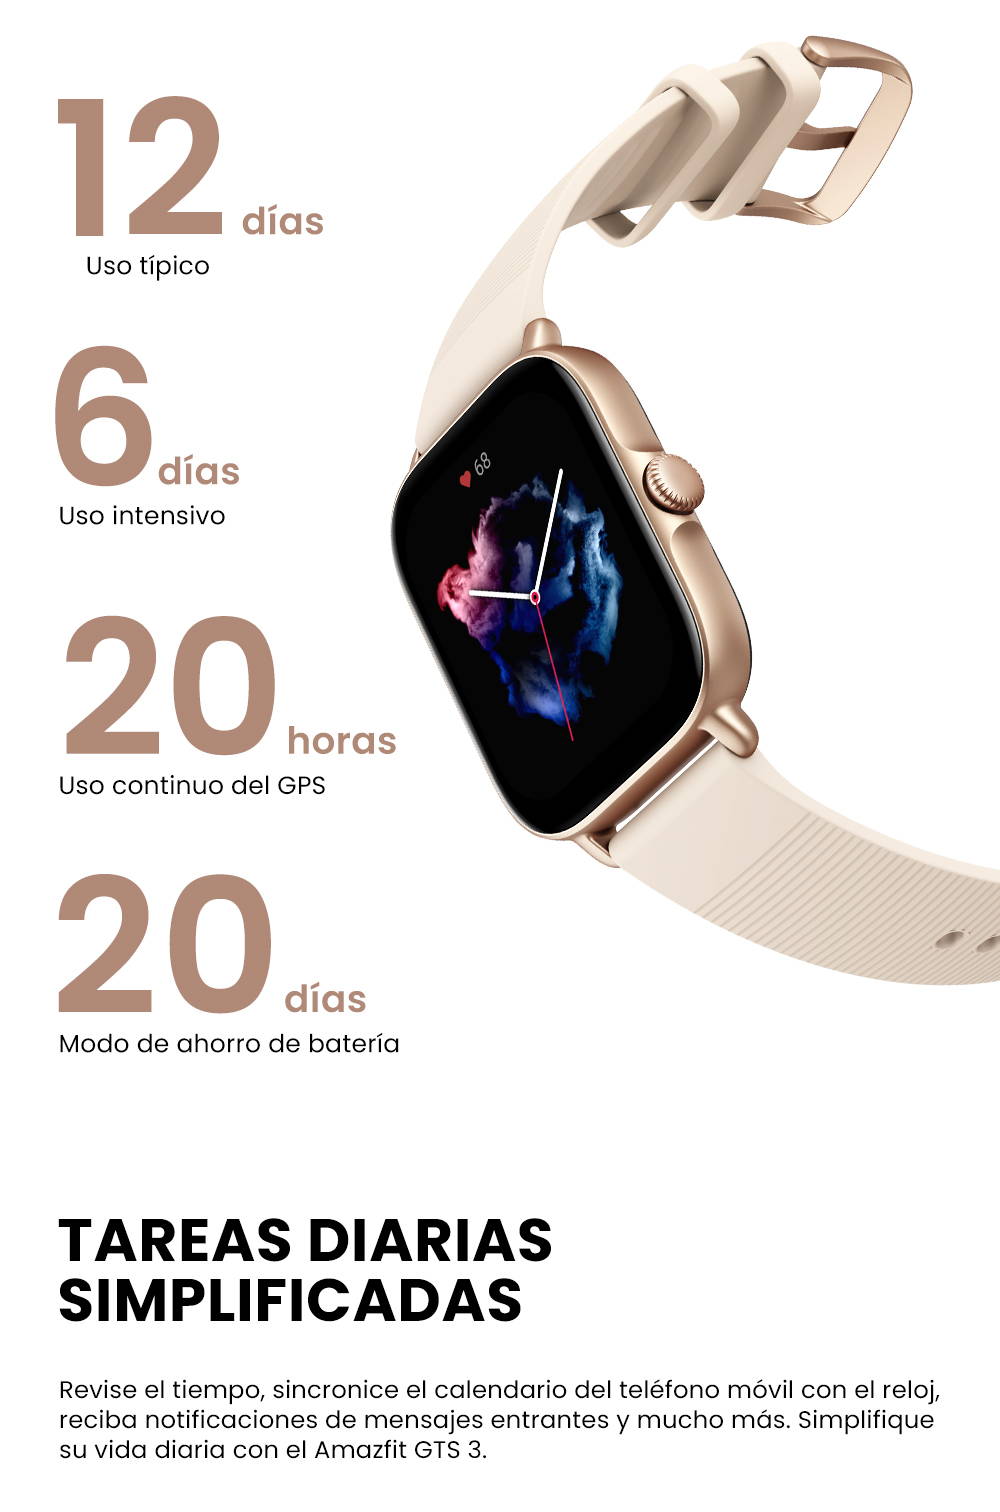 Alexa siempre contigo con este reloj inteligente de Amazfit: el GTS 3,  rebajado en España a solo 123 euros